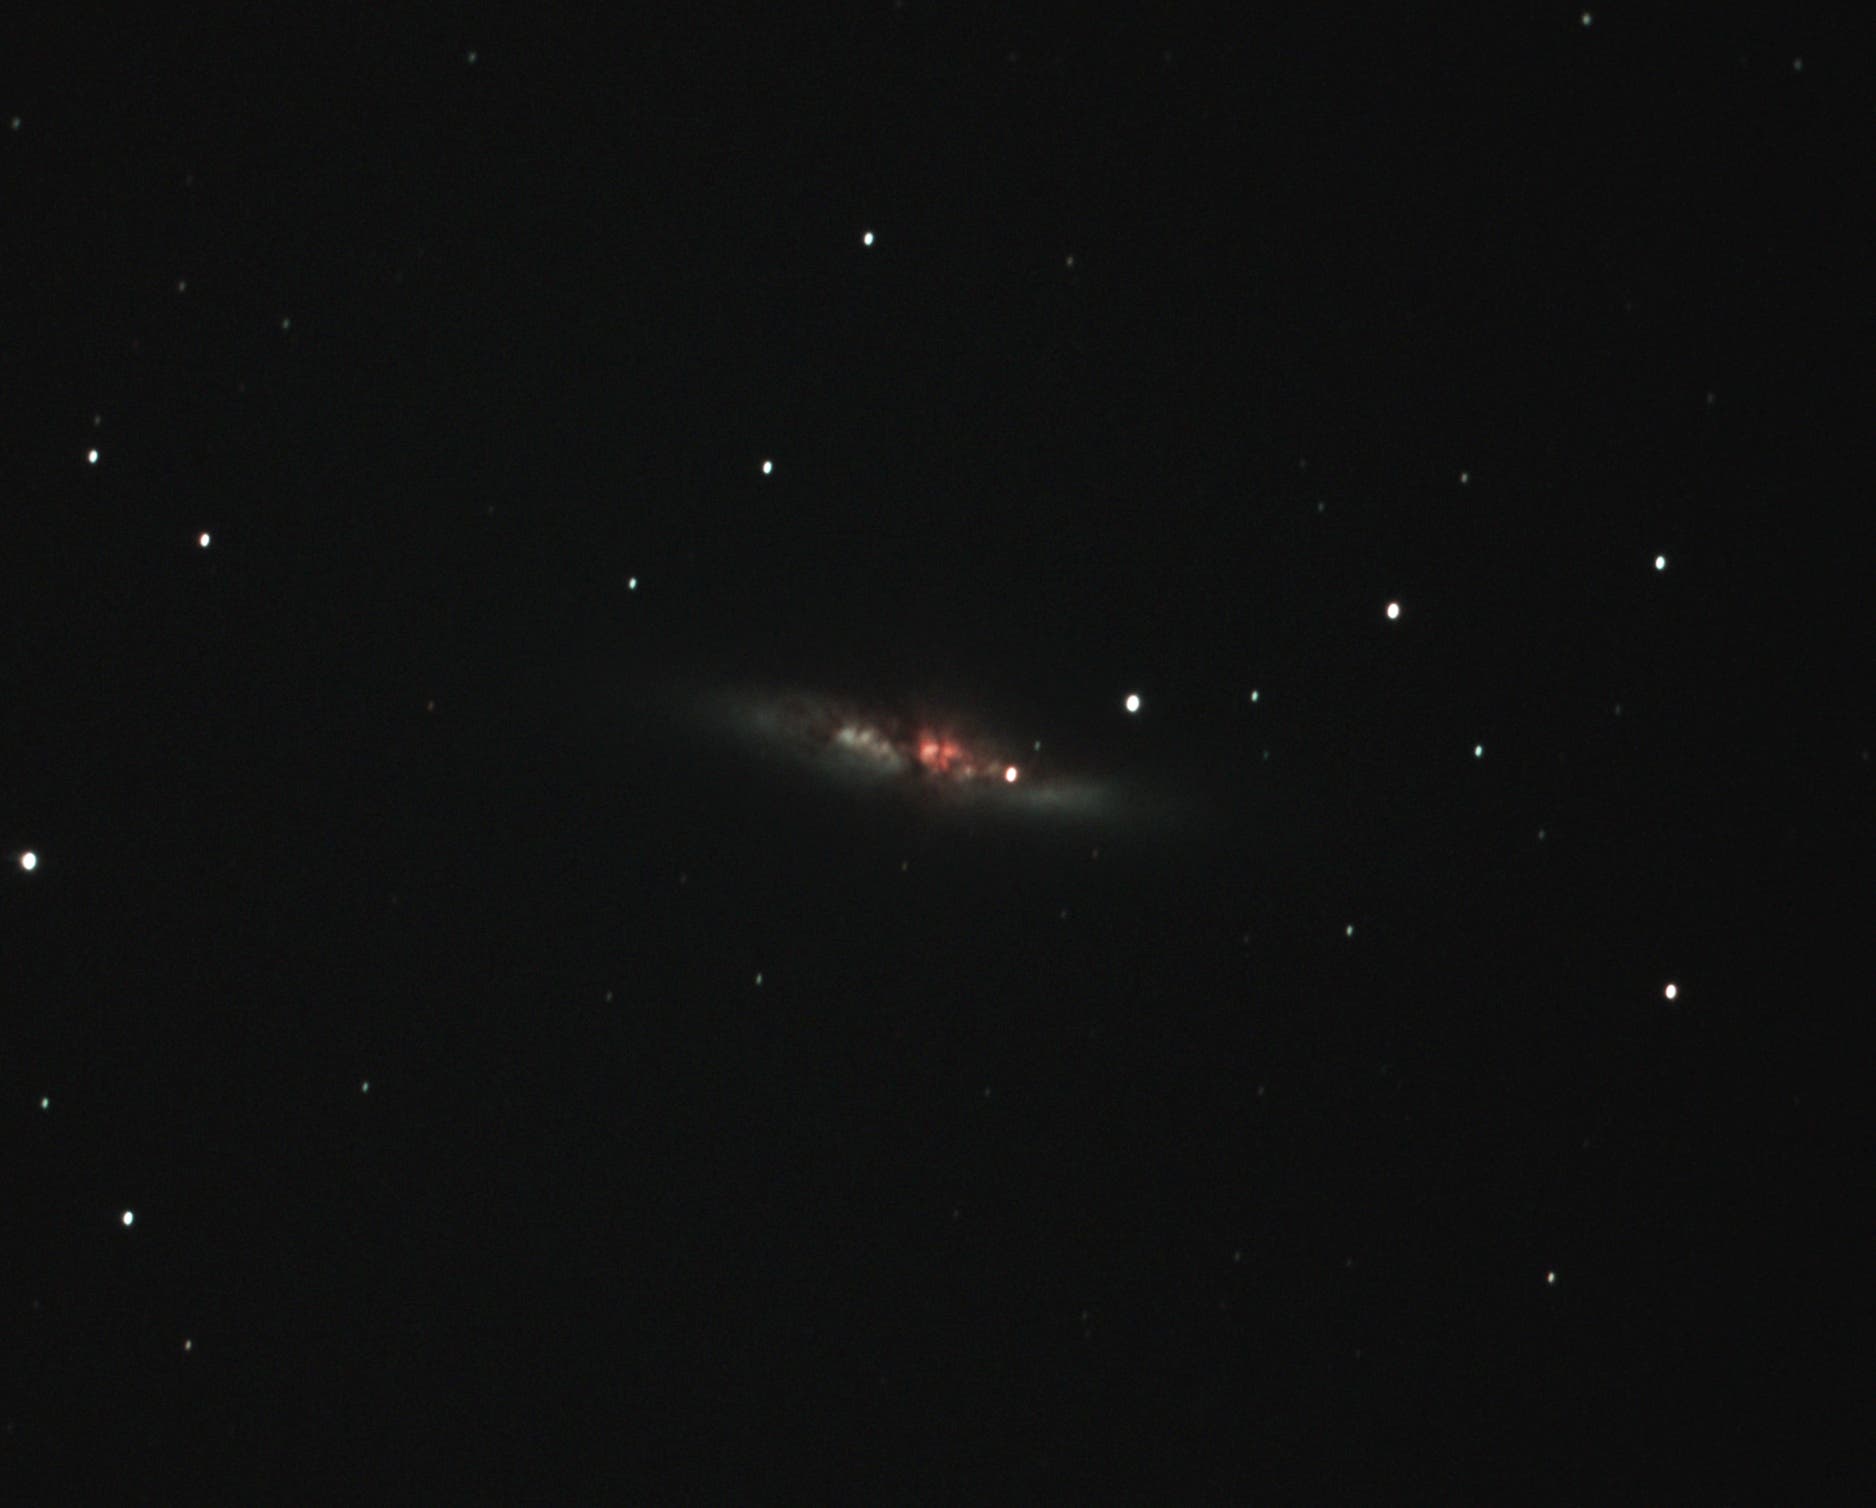 Supernova SN 2014J in M82